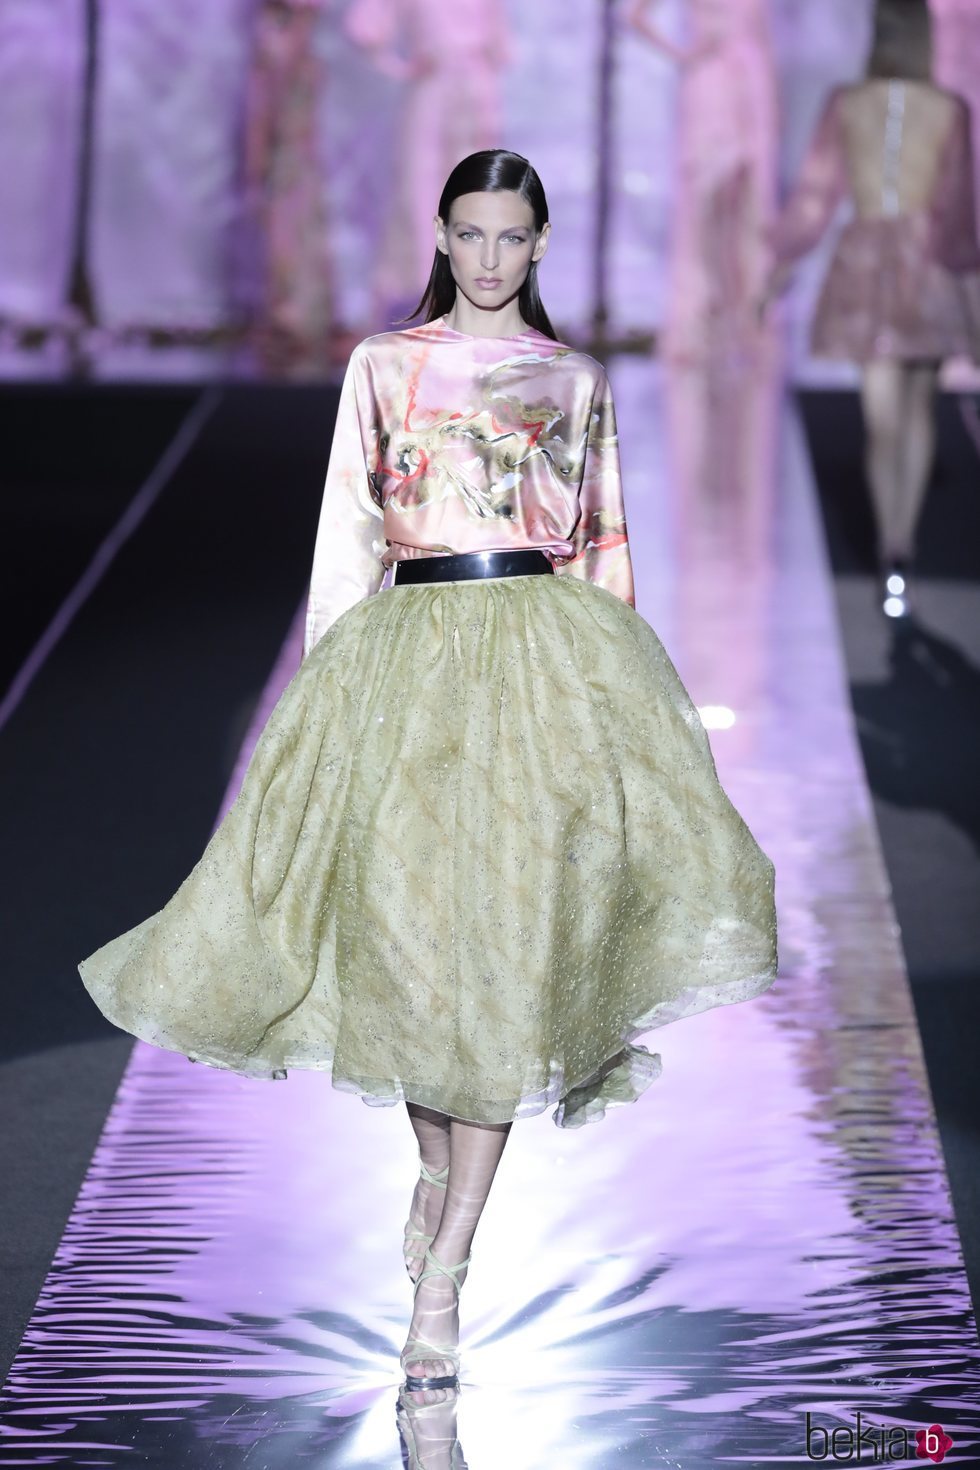 Vestido bicolor de Hannibal Laguna primavera/verano 2019 en la Madrid Fashion Week